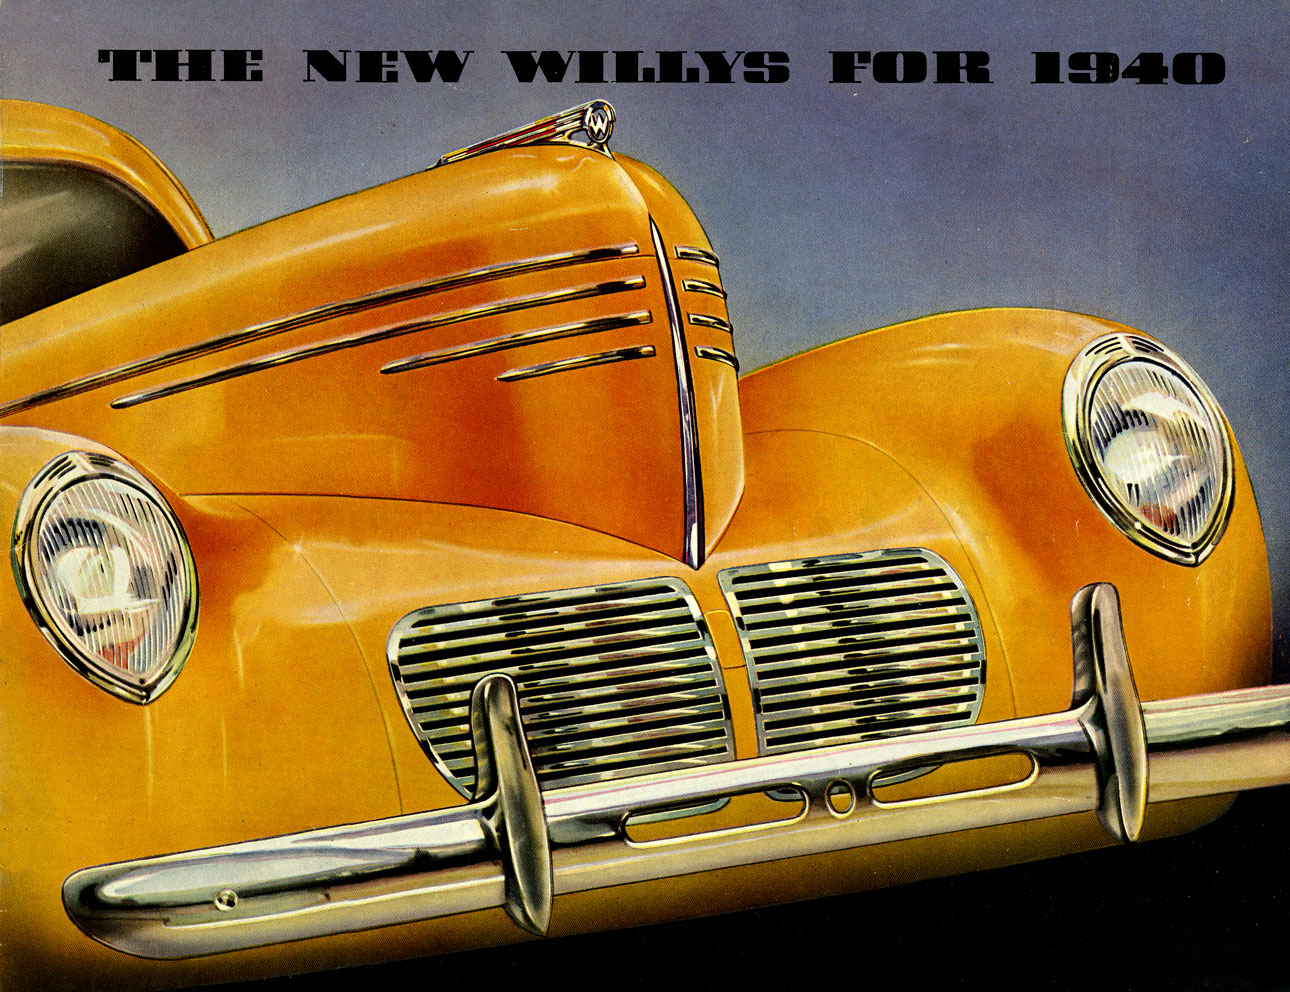 1940_Willys_Full_Line-01